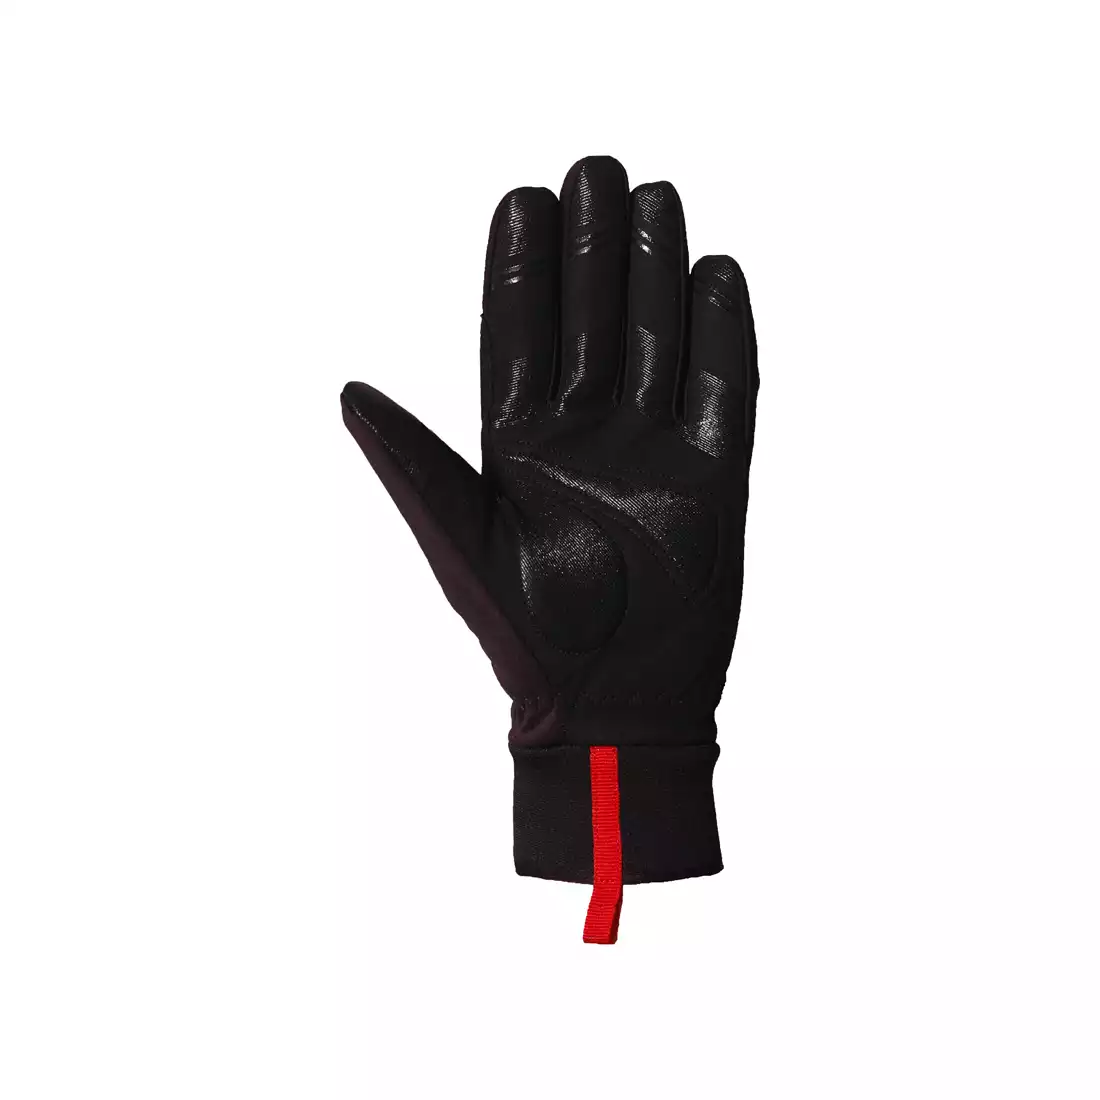 CHIBA zimowe rękawiczki THERMO WINTER